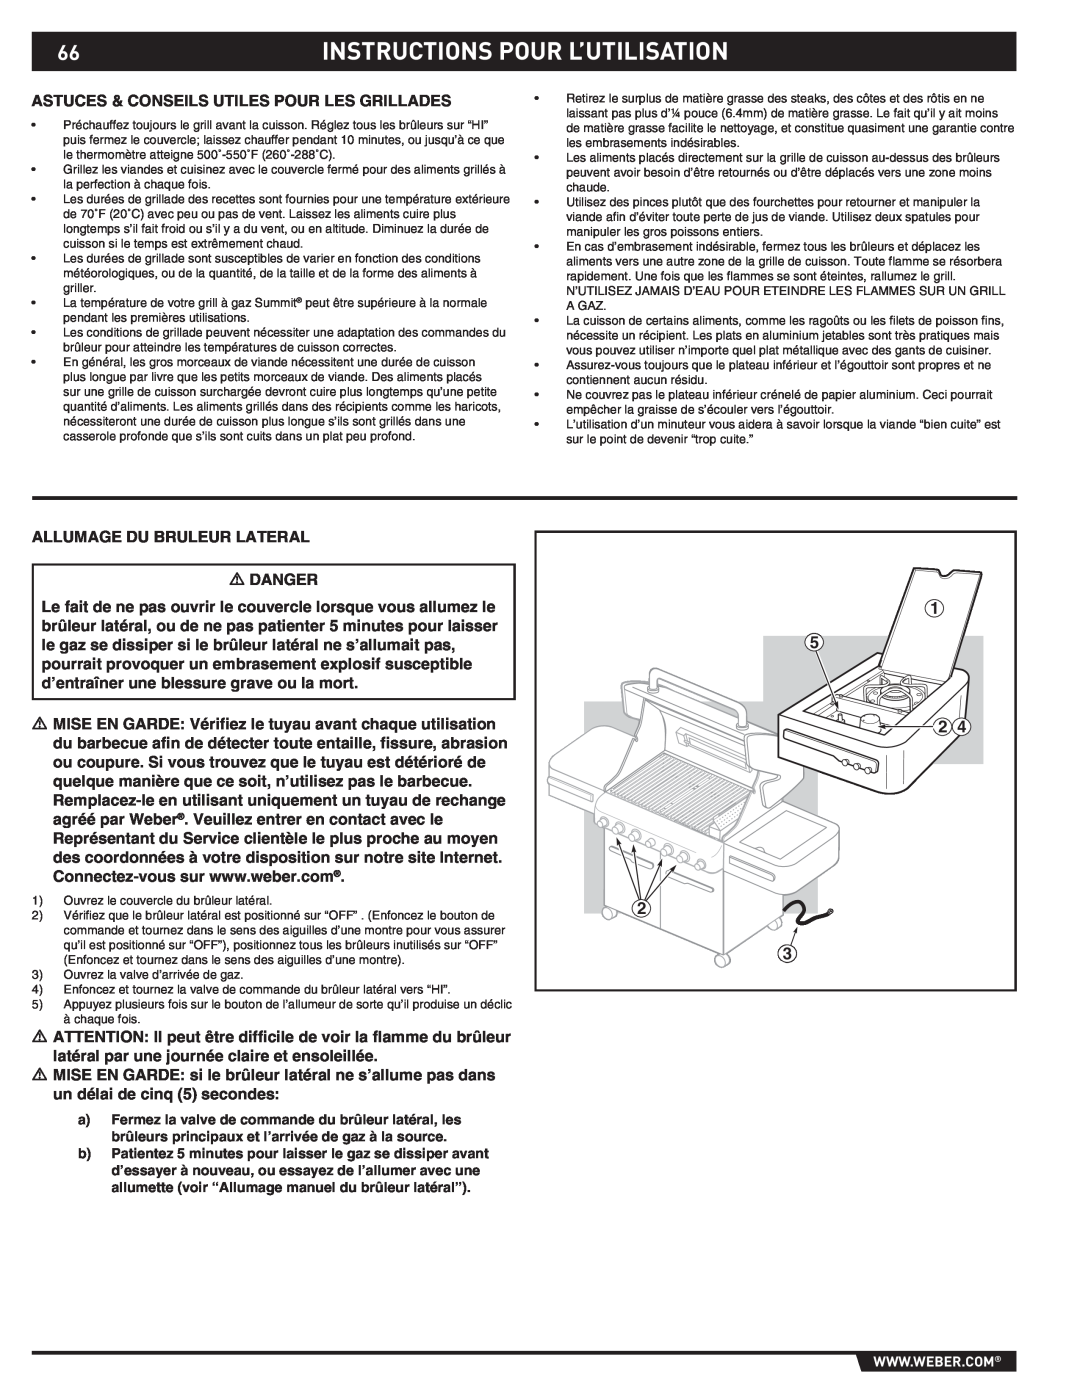 Weber S-470TM manual Instructions Pour L’Utilisation, Astuces & Conseils Utiles Pour Les Grillades 